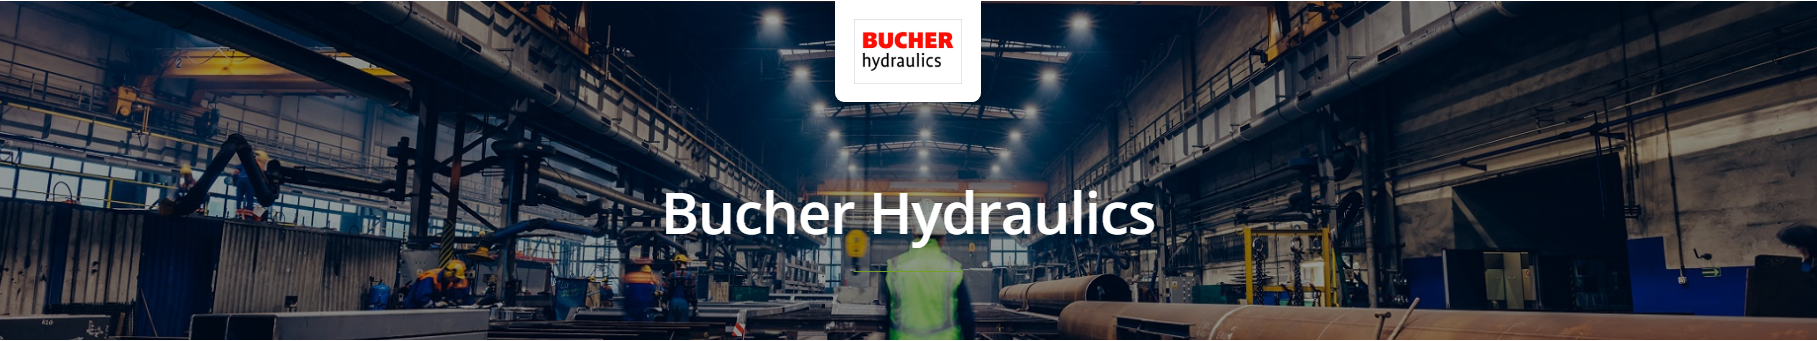 Bucher Hydraulics Safety Relief Valves